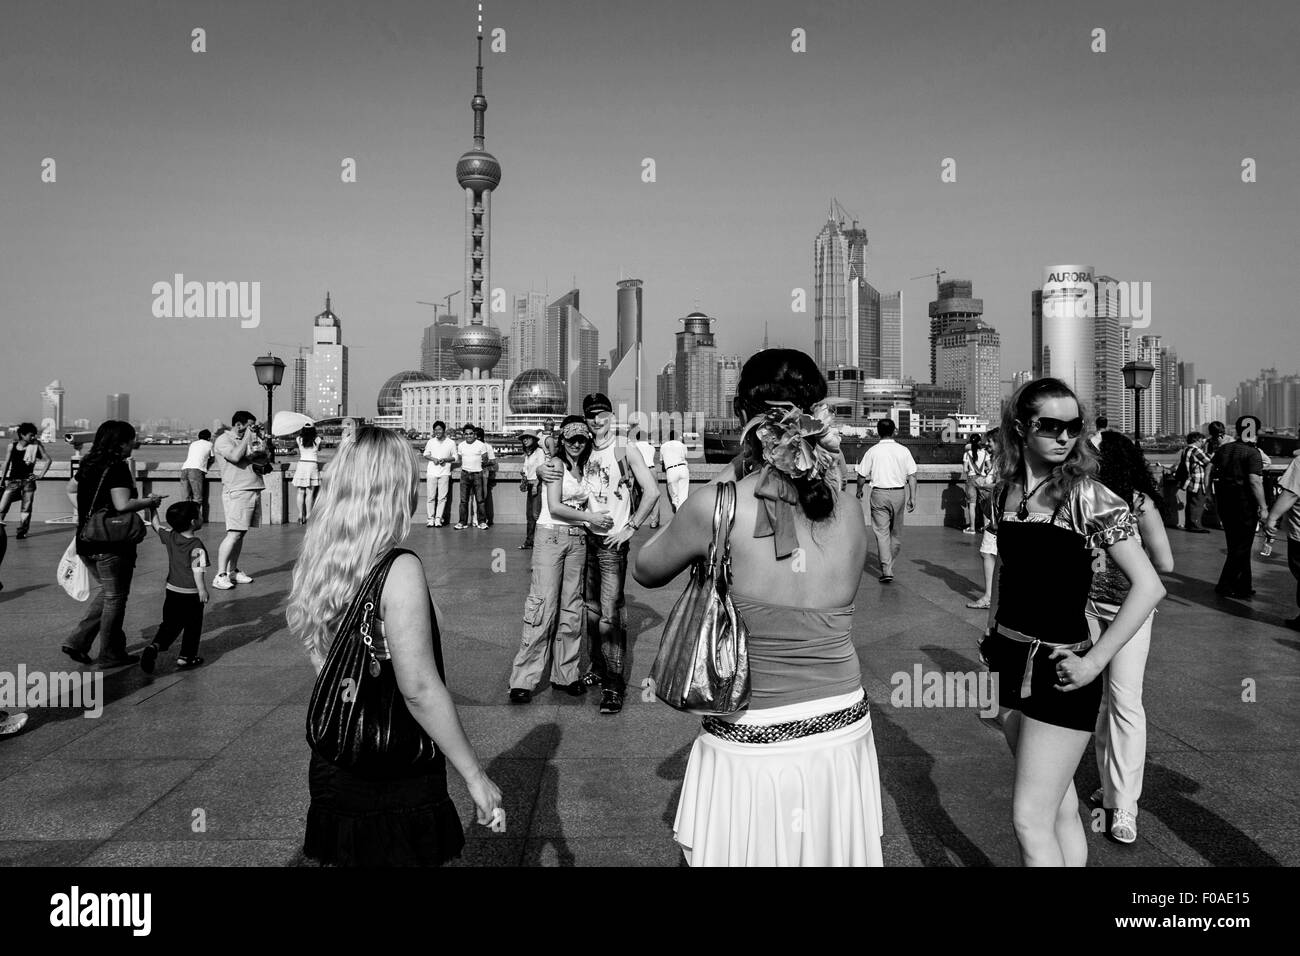 Des touristes posent pour des photos sur le Bund, Shanghai, Chine Banque D'Images